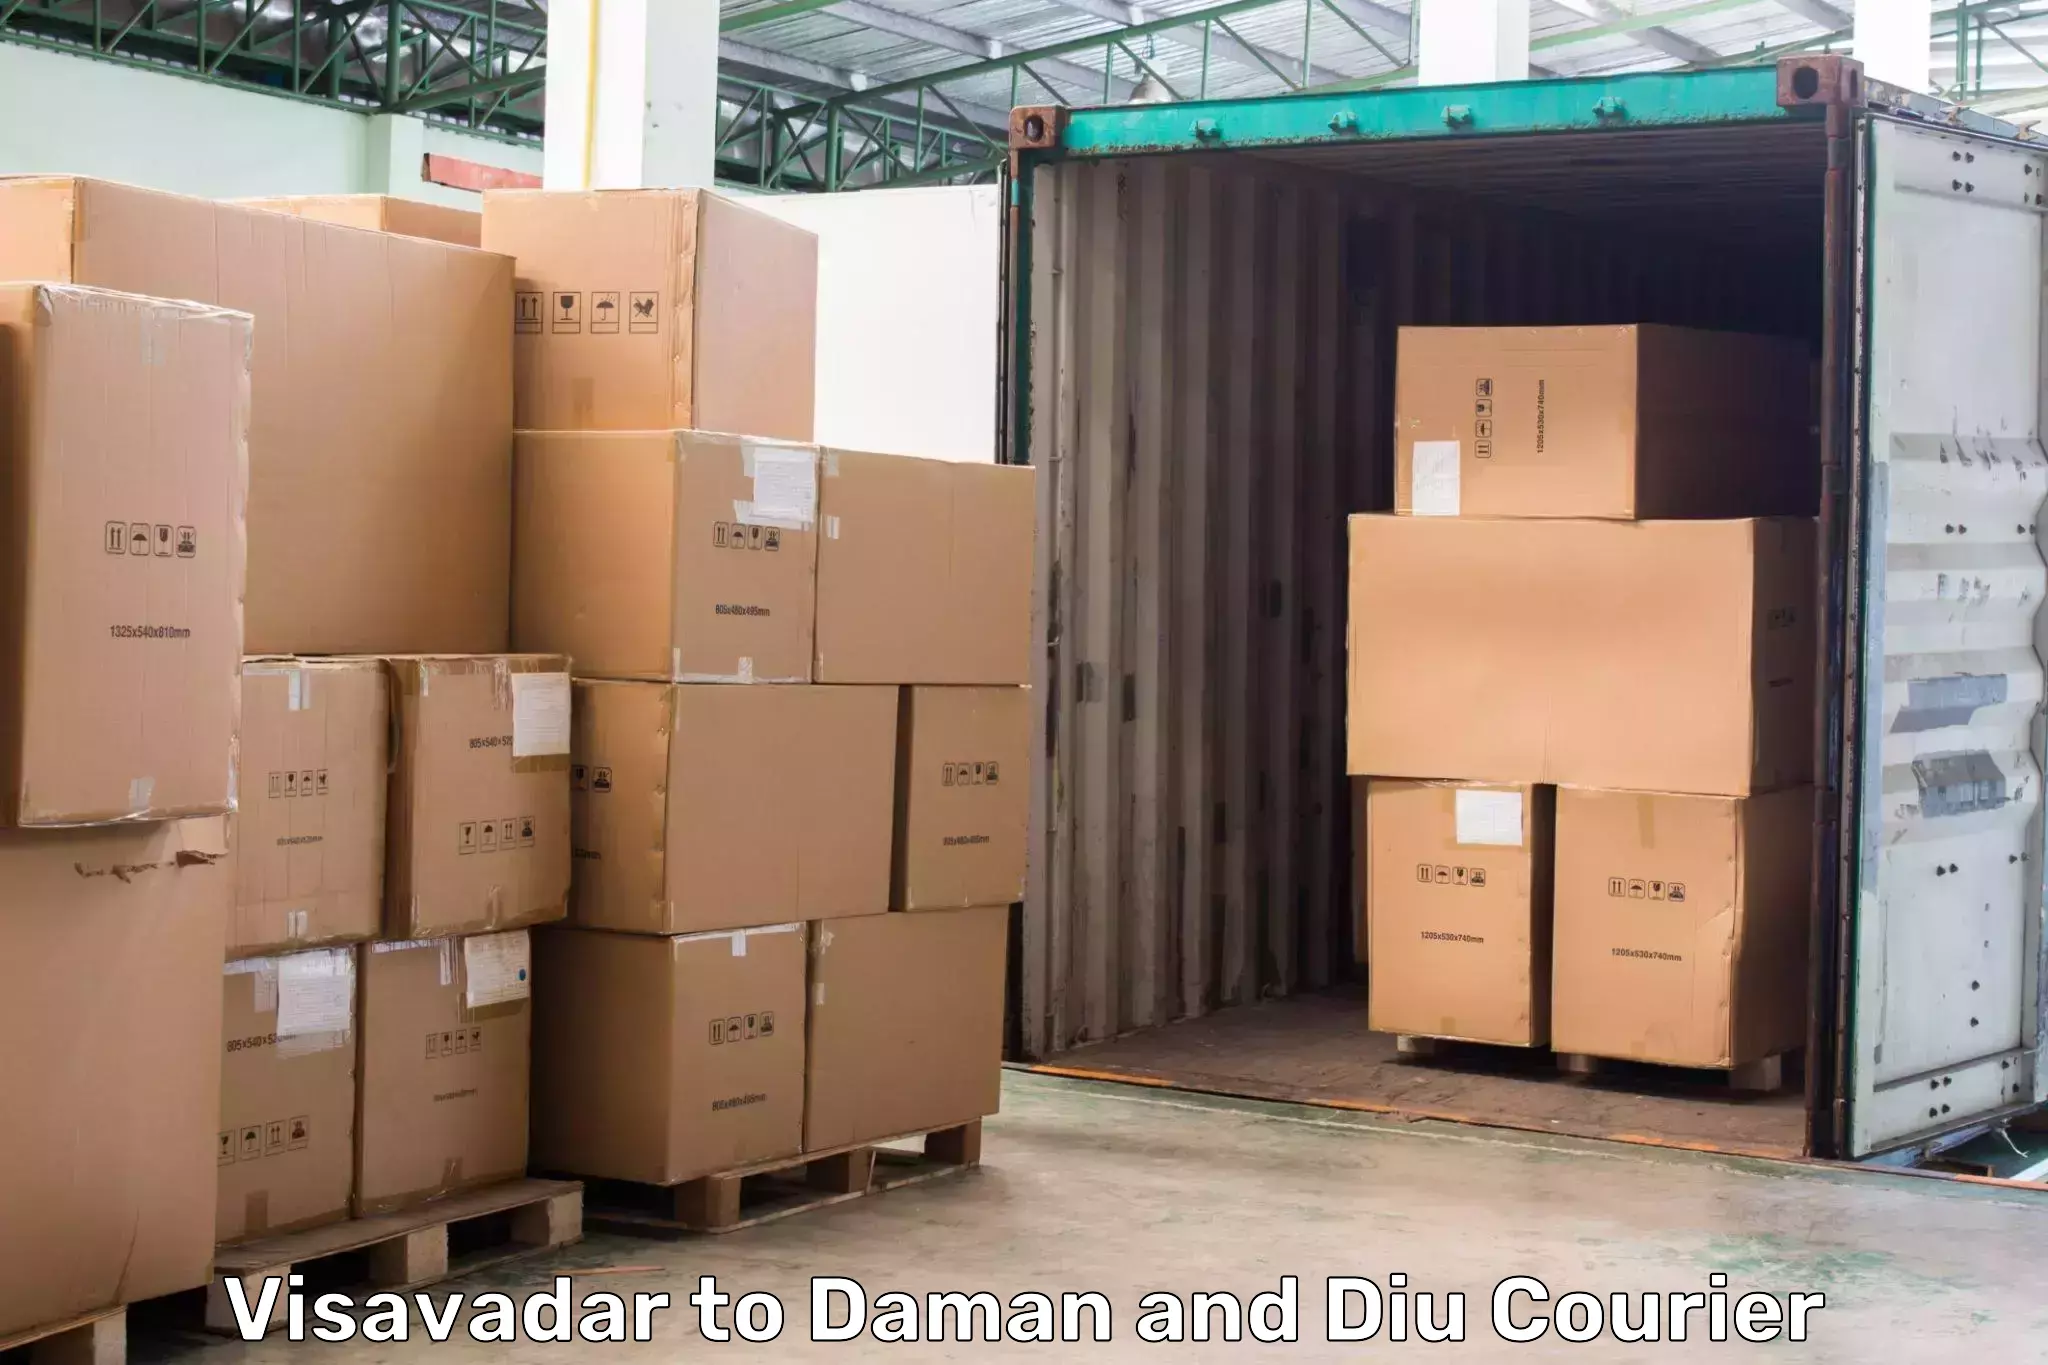 Expedited shipping methods Visavadar to Daman